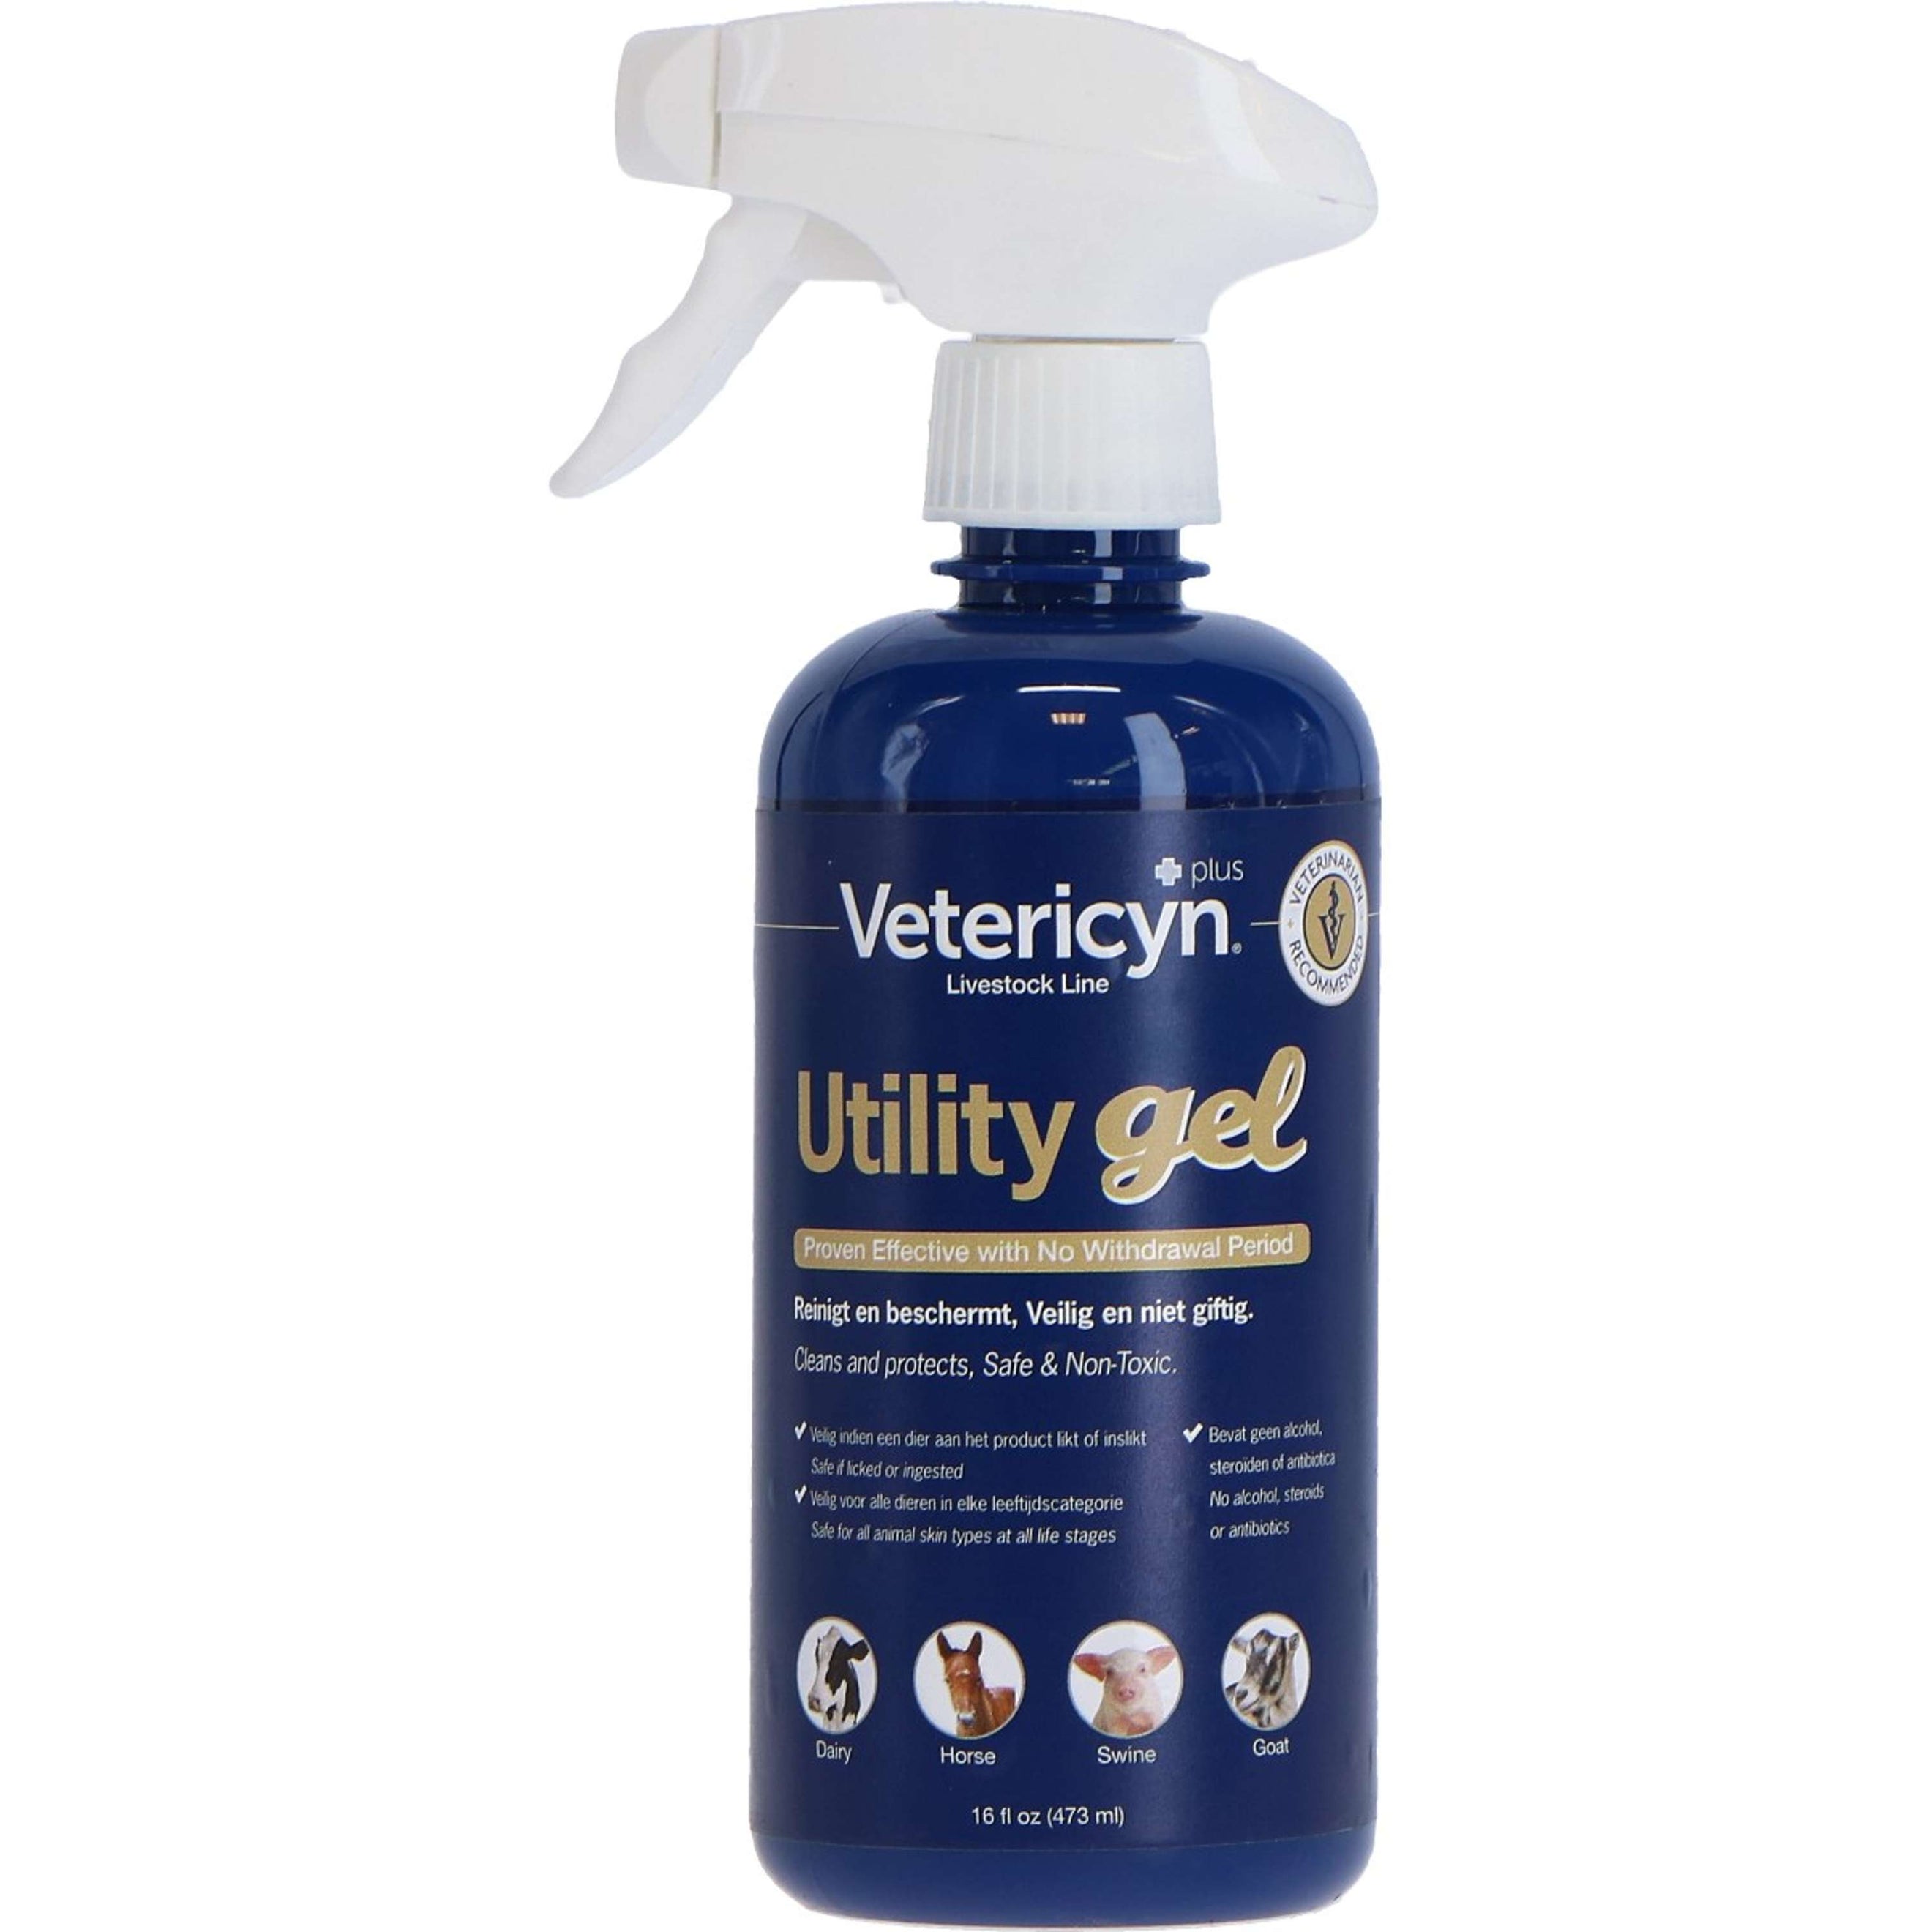 Vetericyn ® Plus Veterinaire Utility Gel